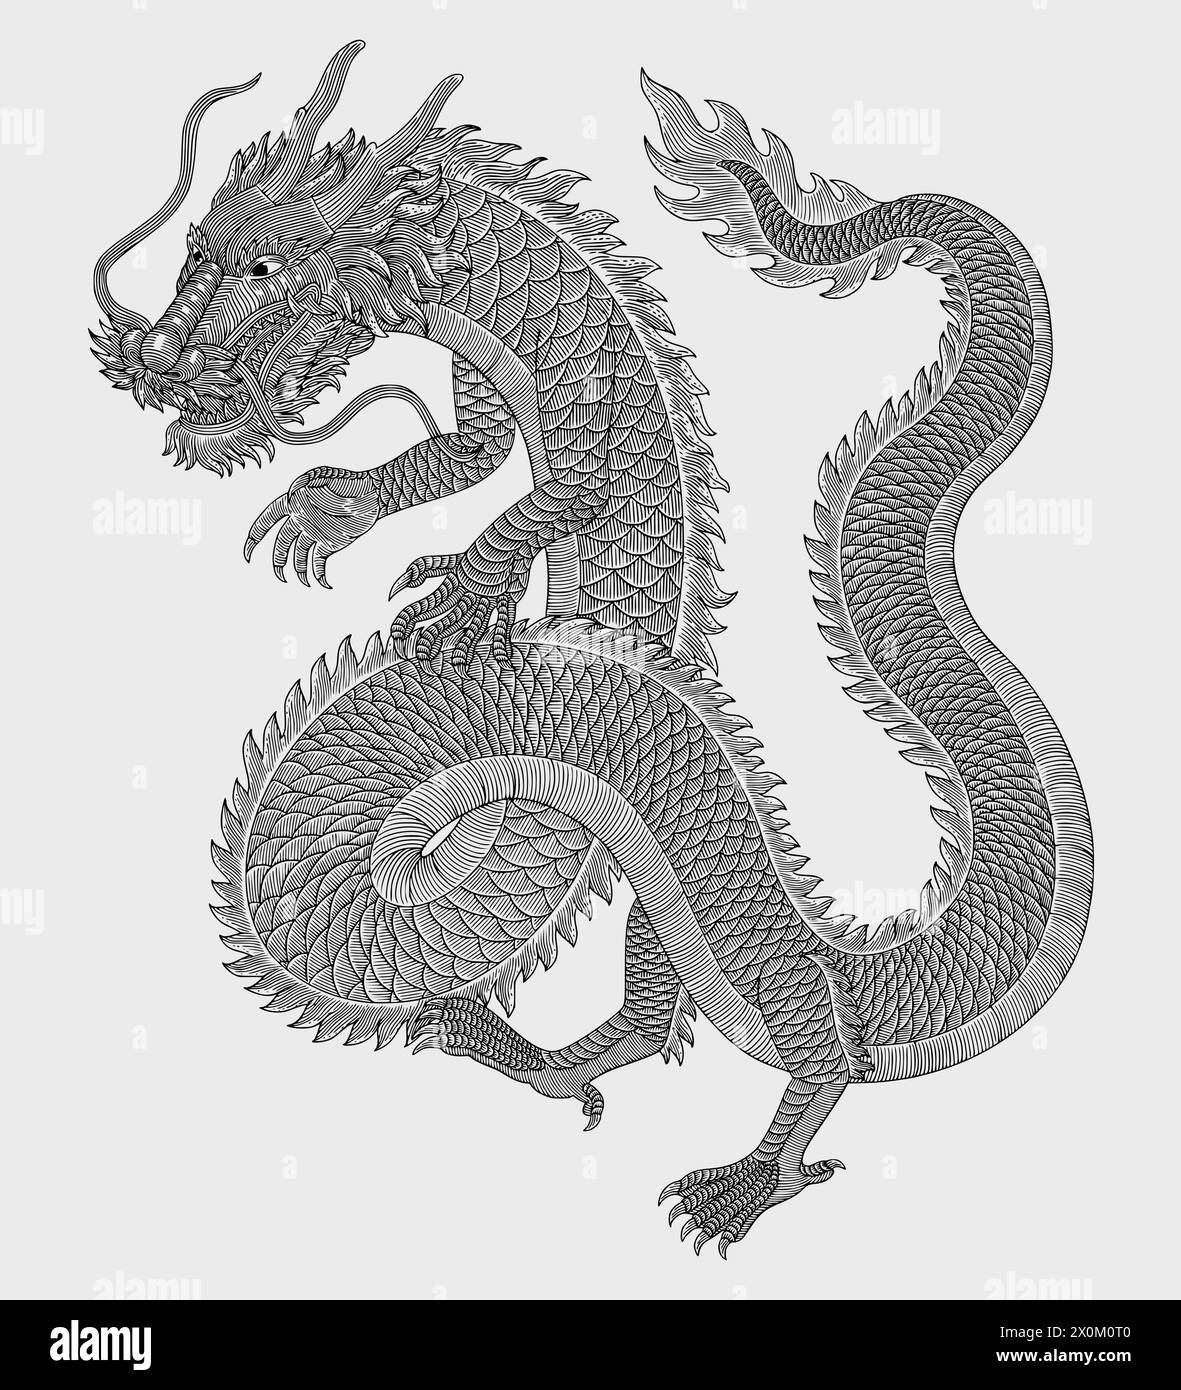 Illustration de style dessin de dessin de dessin de dessin de style dragon japonais Illustration de Vecteur